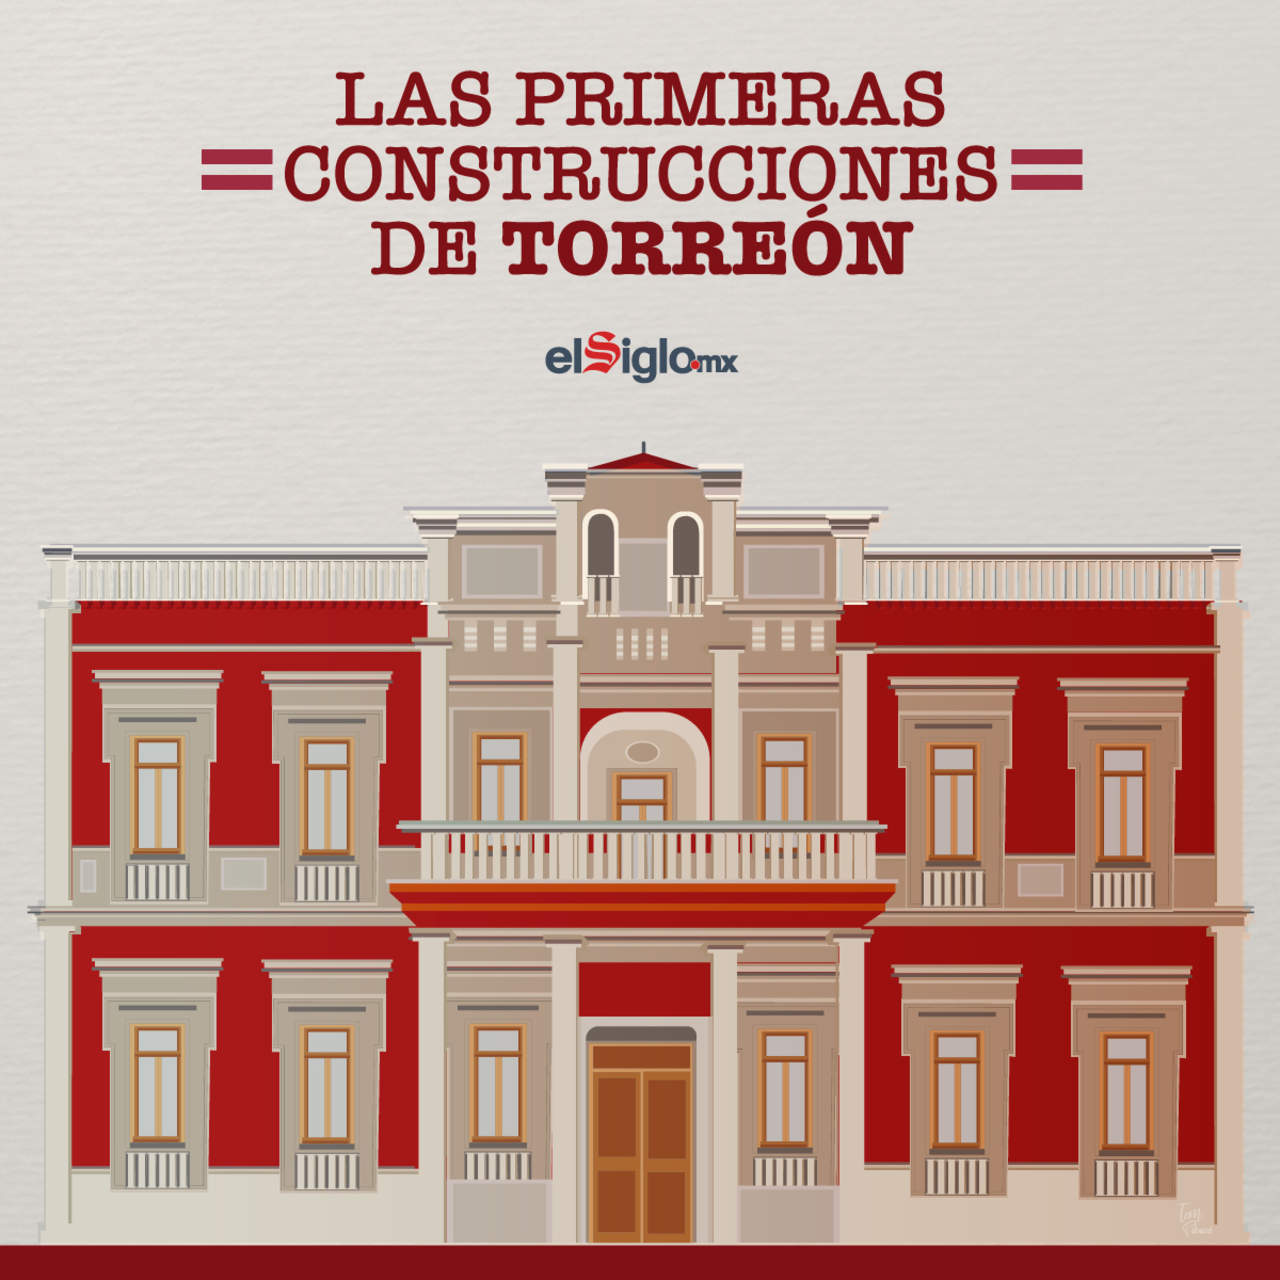 ¿Cómo fueron las primeras construcciones de Torreón?